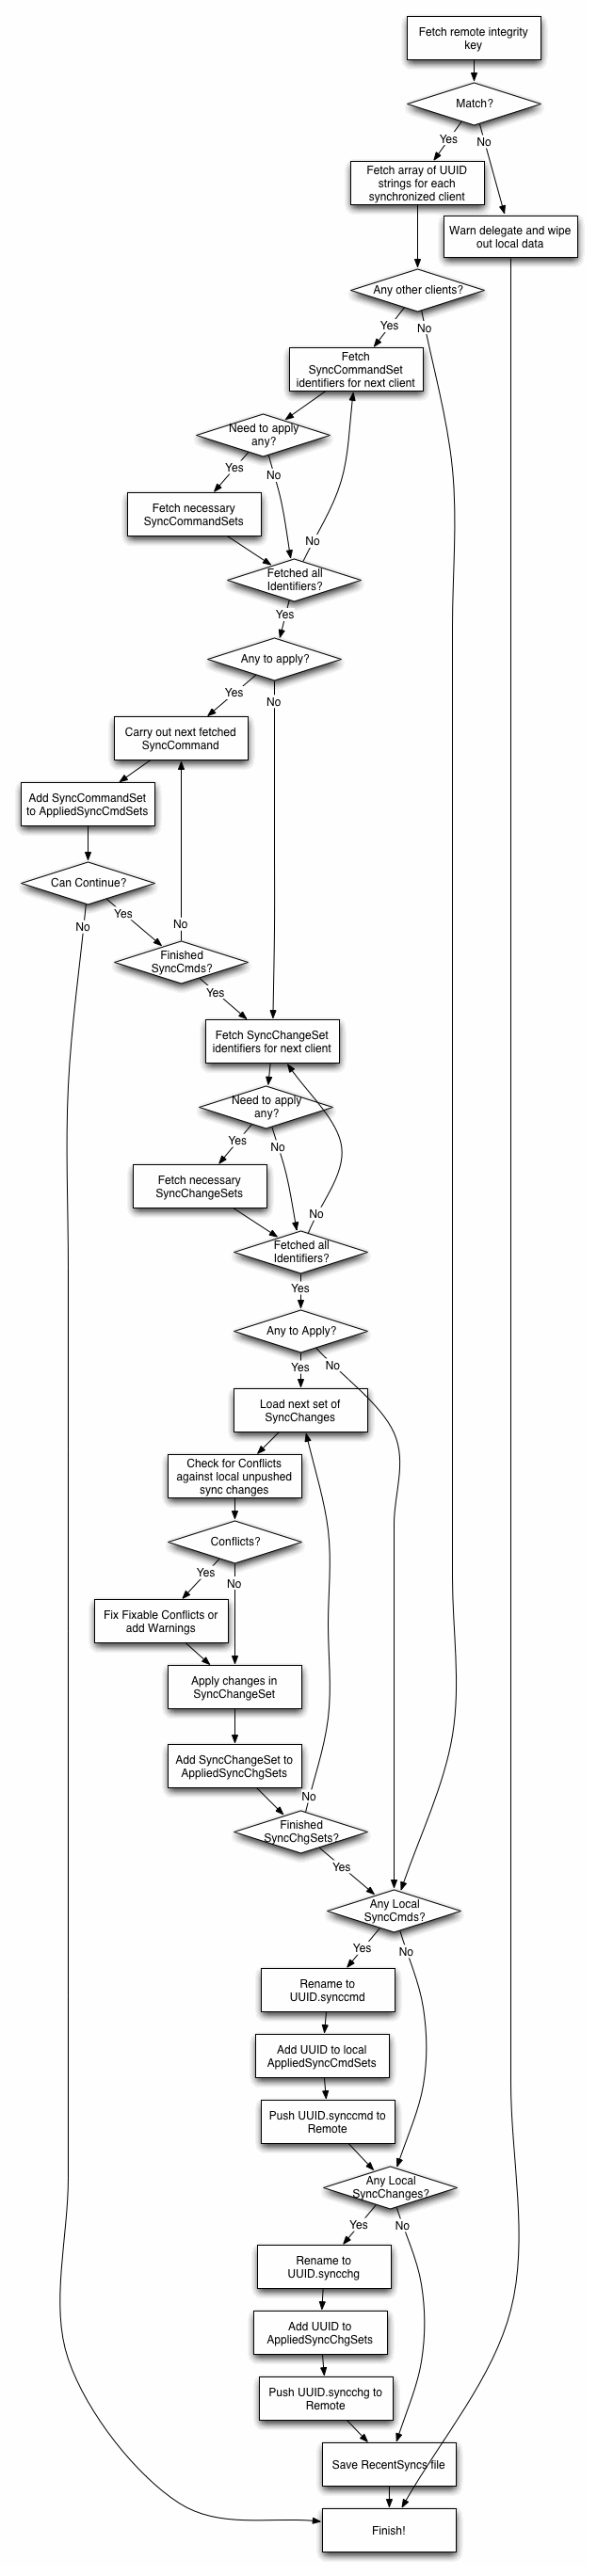 TICDSSynchronizationOperation task diagram